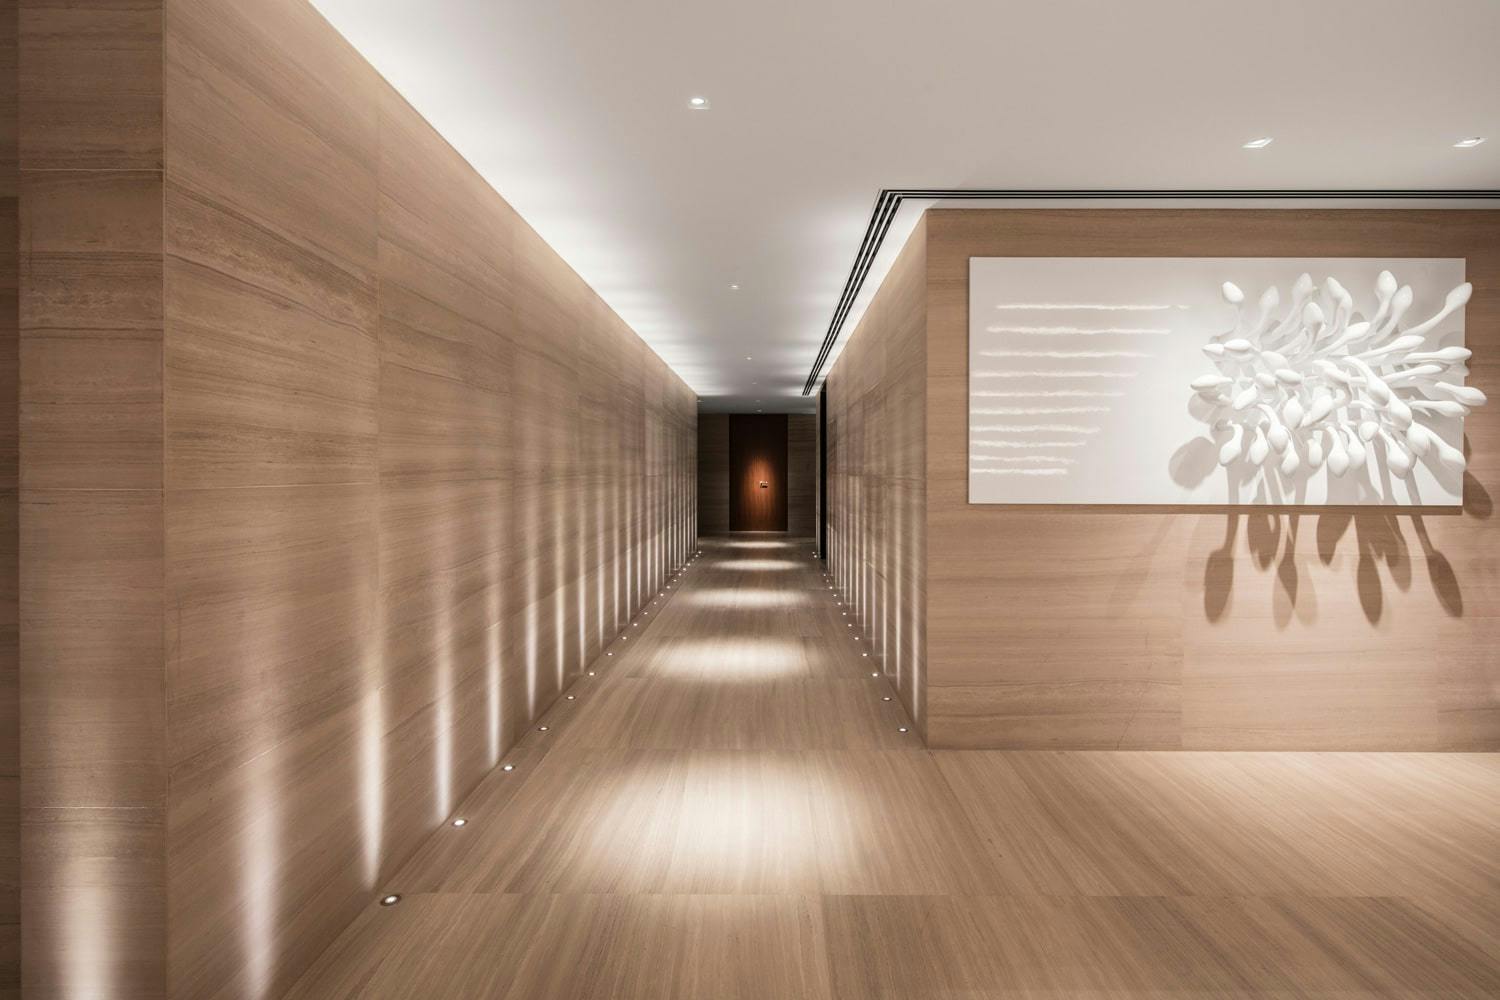 Imagem número 44 da actual secção de Um projeto de design de interiores premiado concluído com Dekton Kelya da Cosentino Portugal